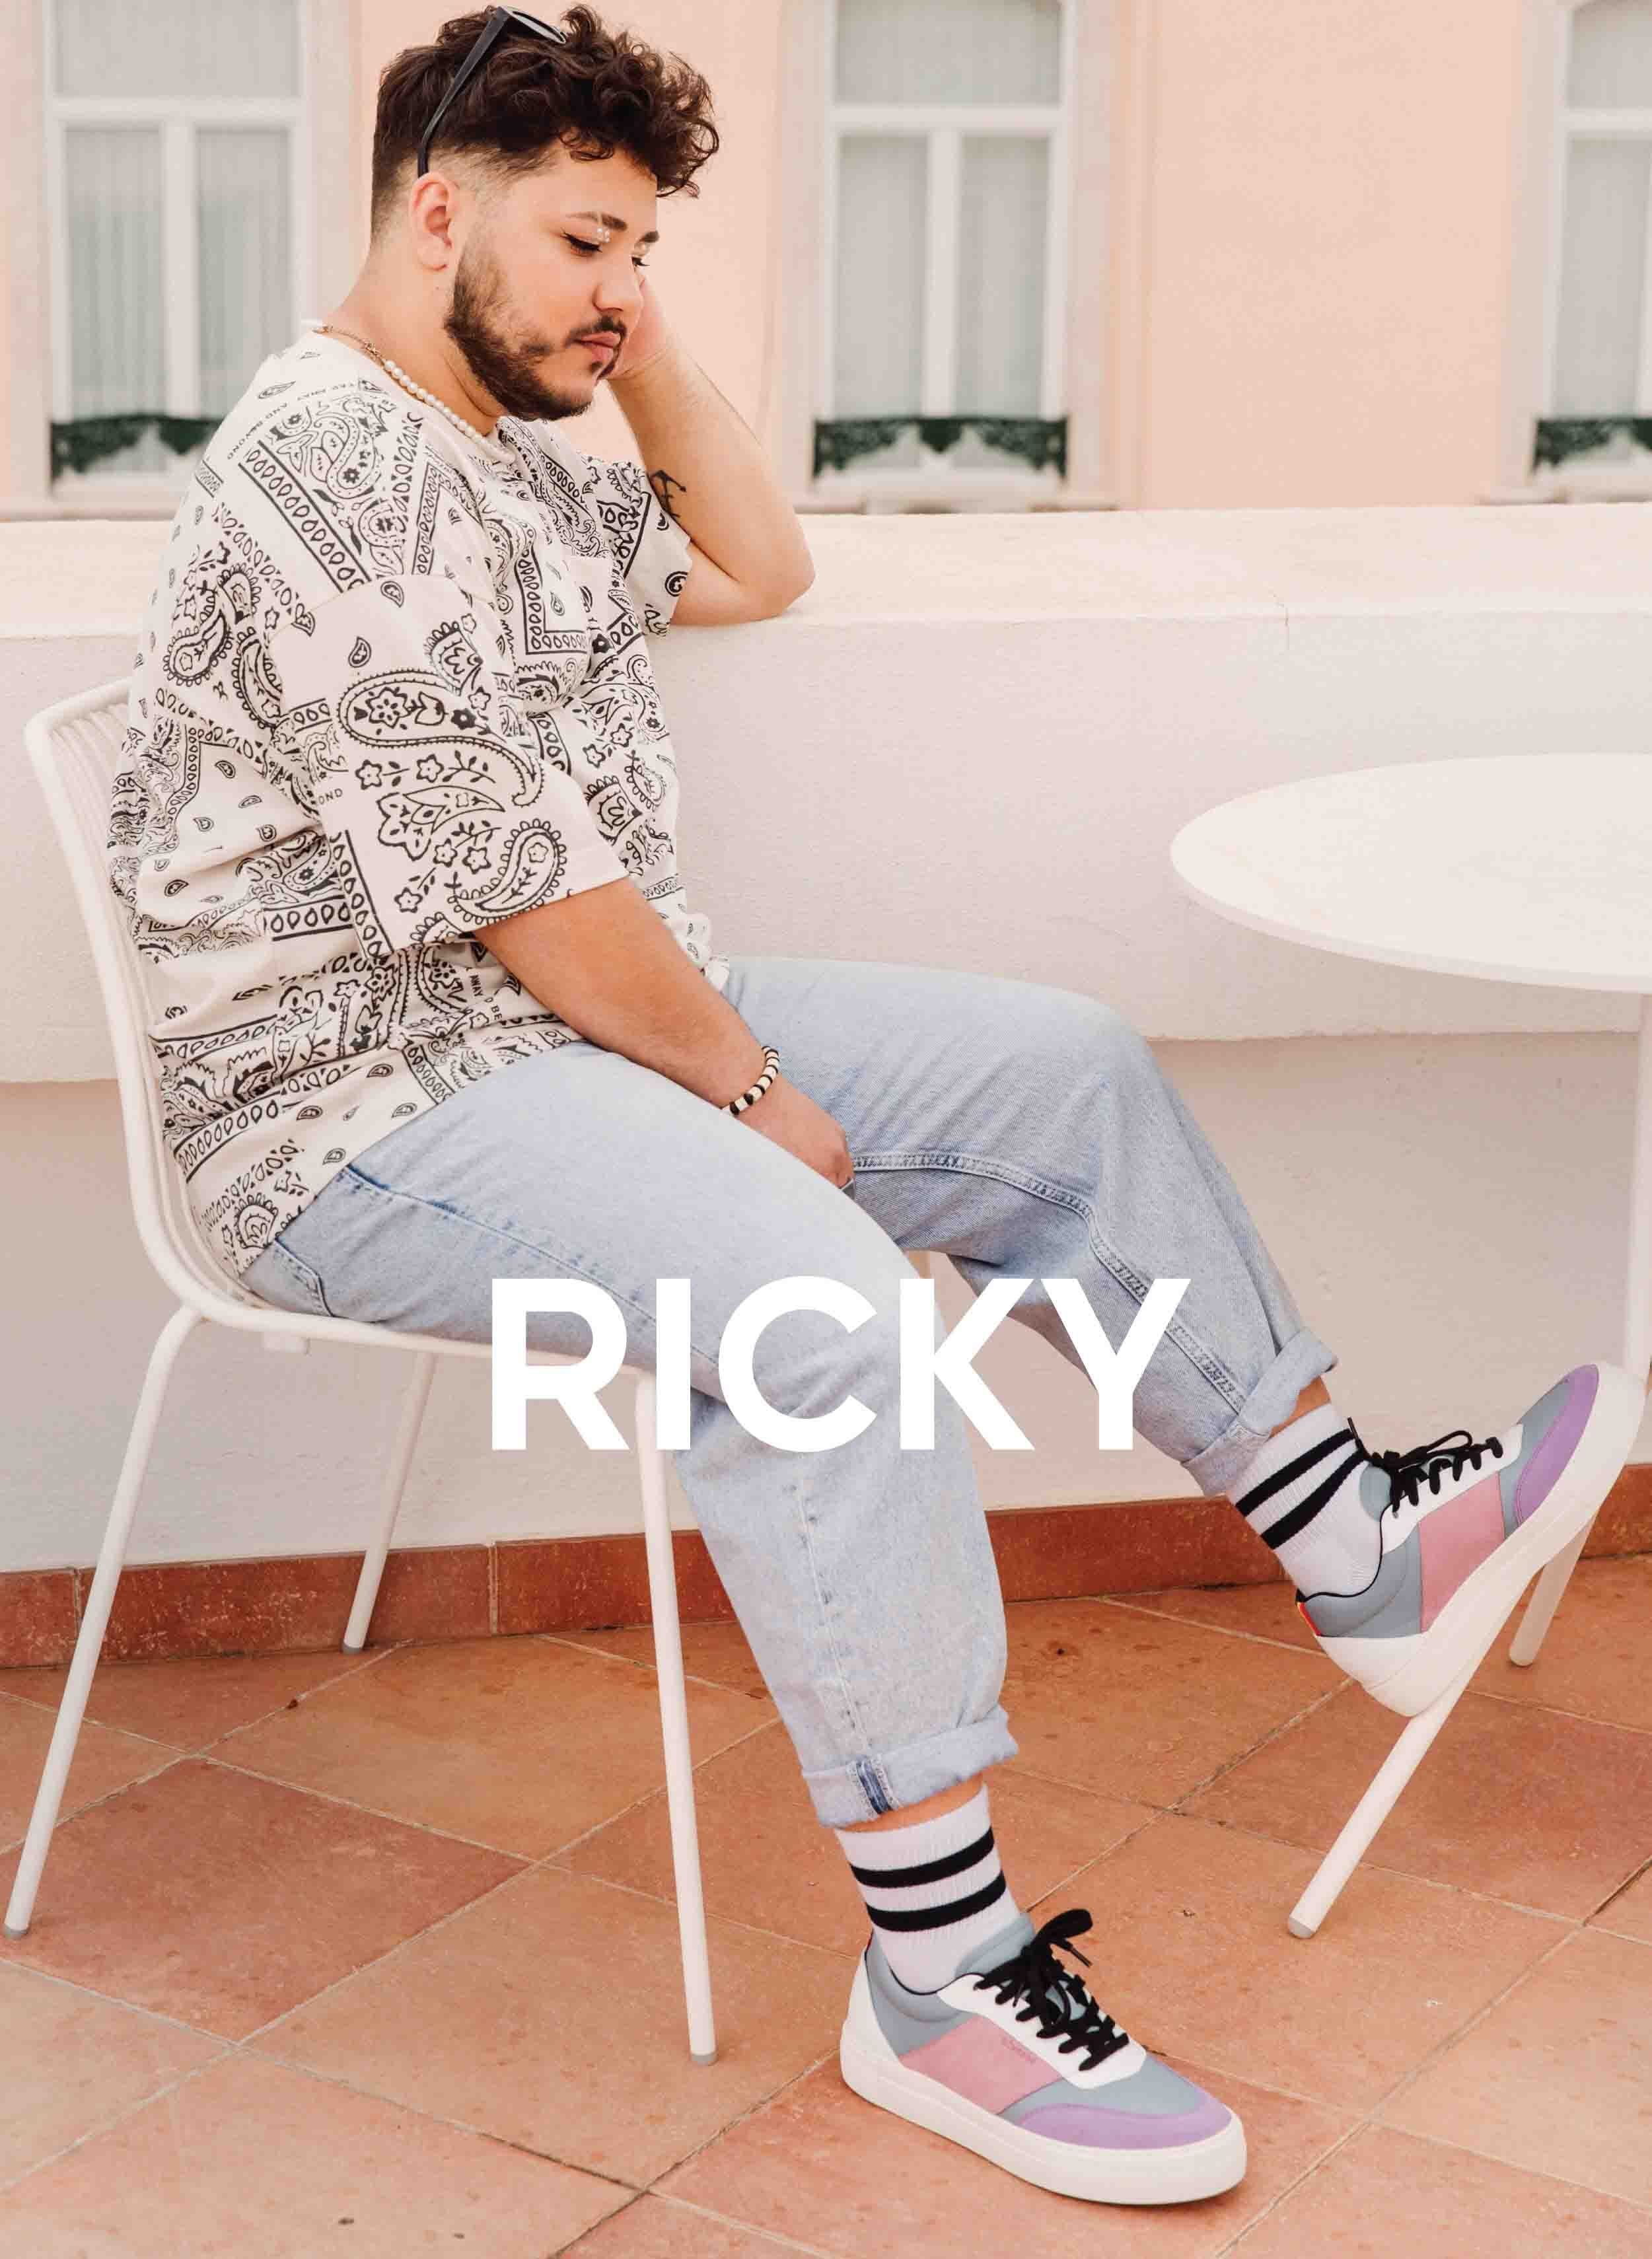 Ricky assis sur une chaise en regardant sa coutume Diverge sneakers, promouvant l’impact social et les chaussures personnalisées à travers le projet Imagine.   